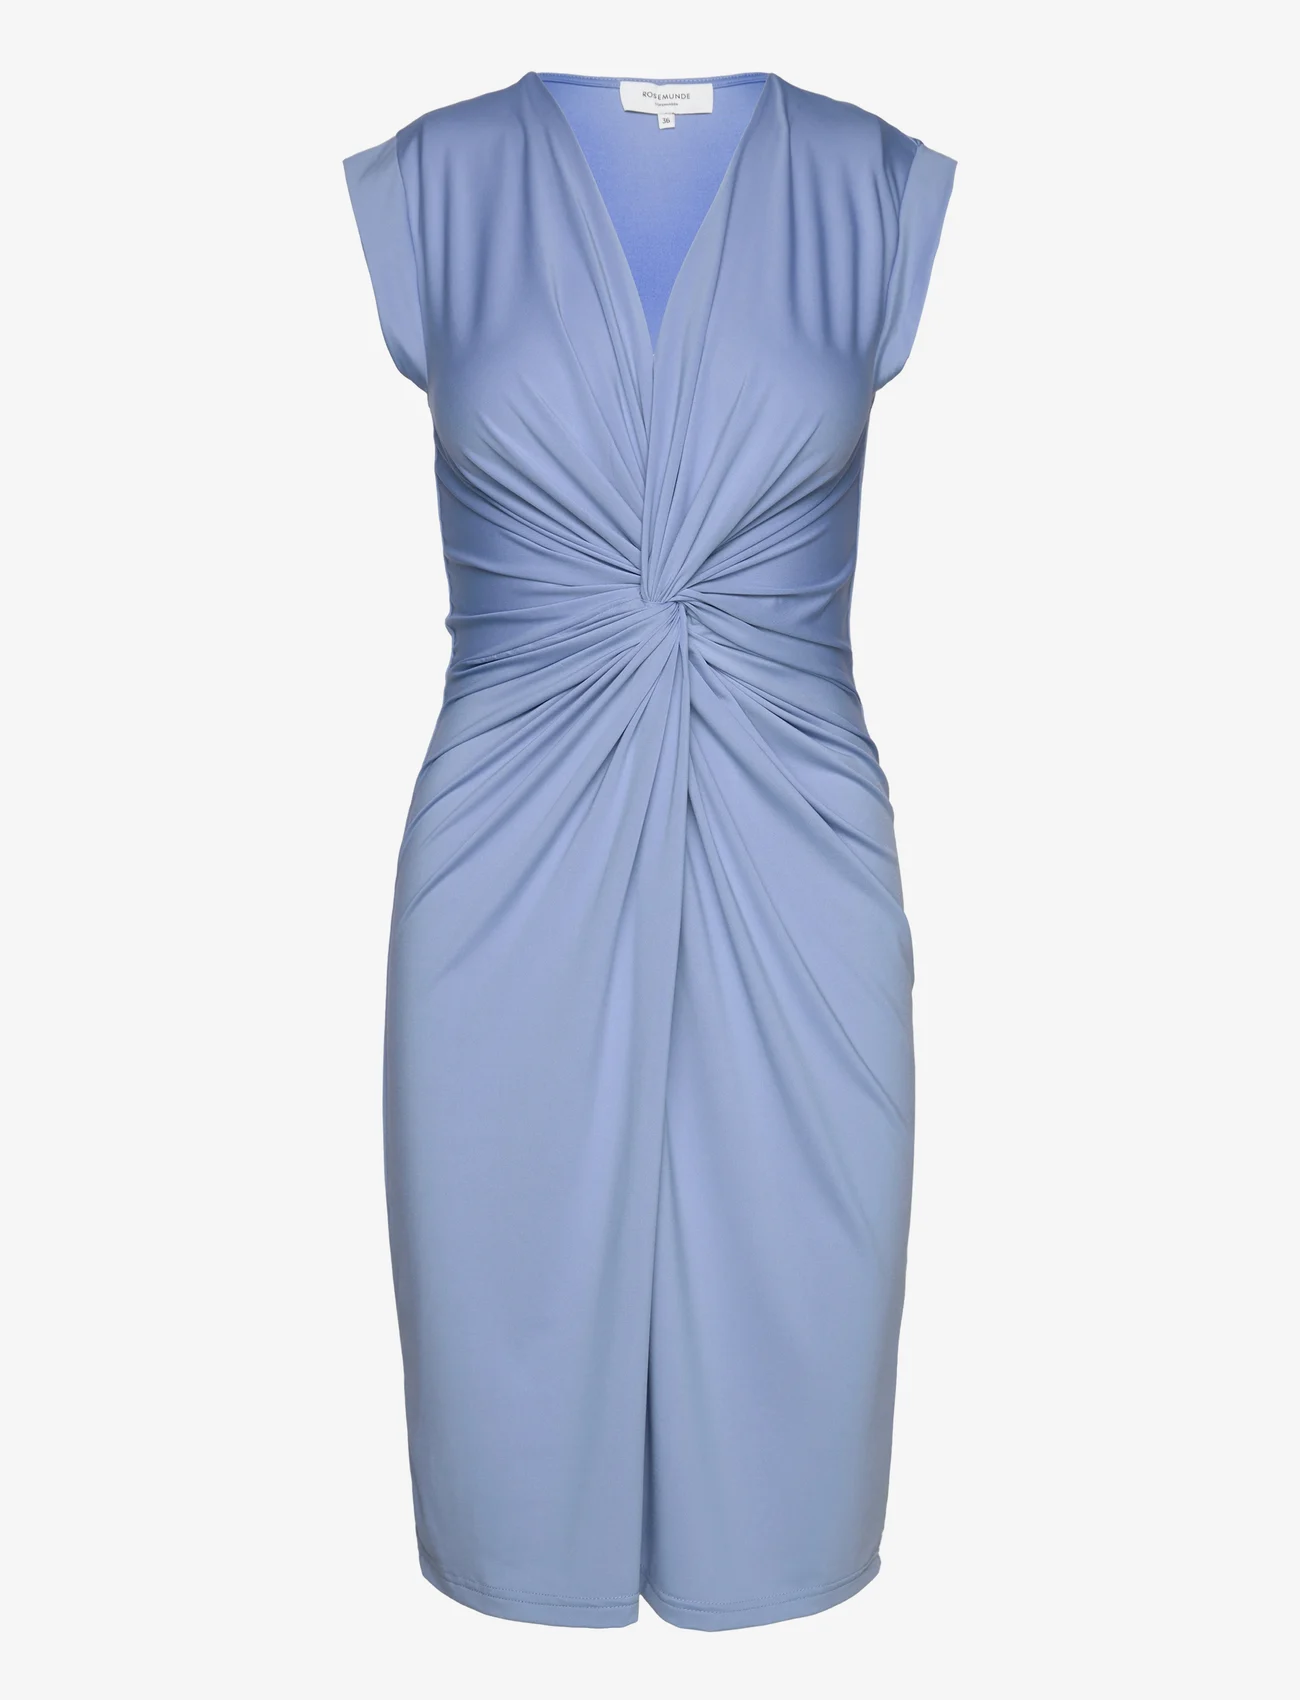 Rosemunde - Dress - festmode zu outlet-preisen - blue allure - 0